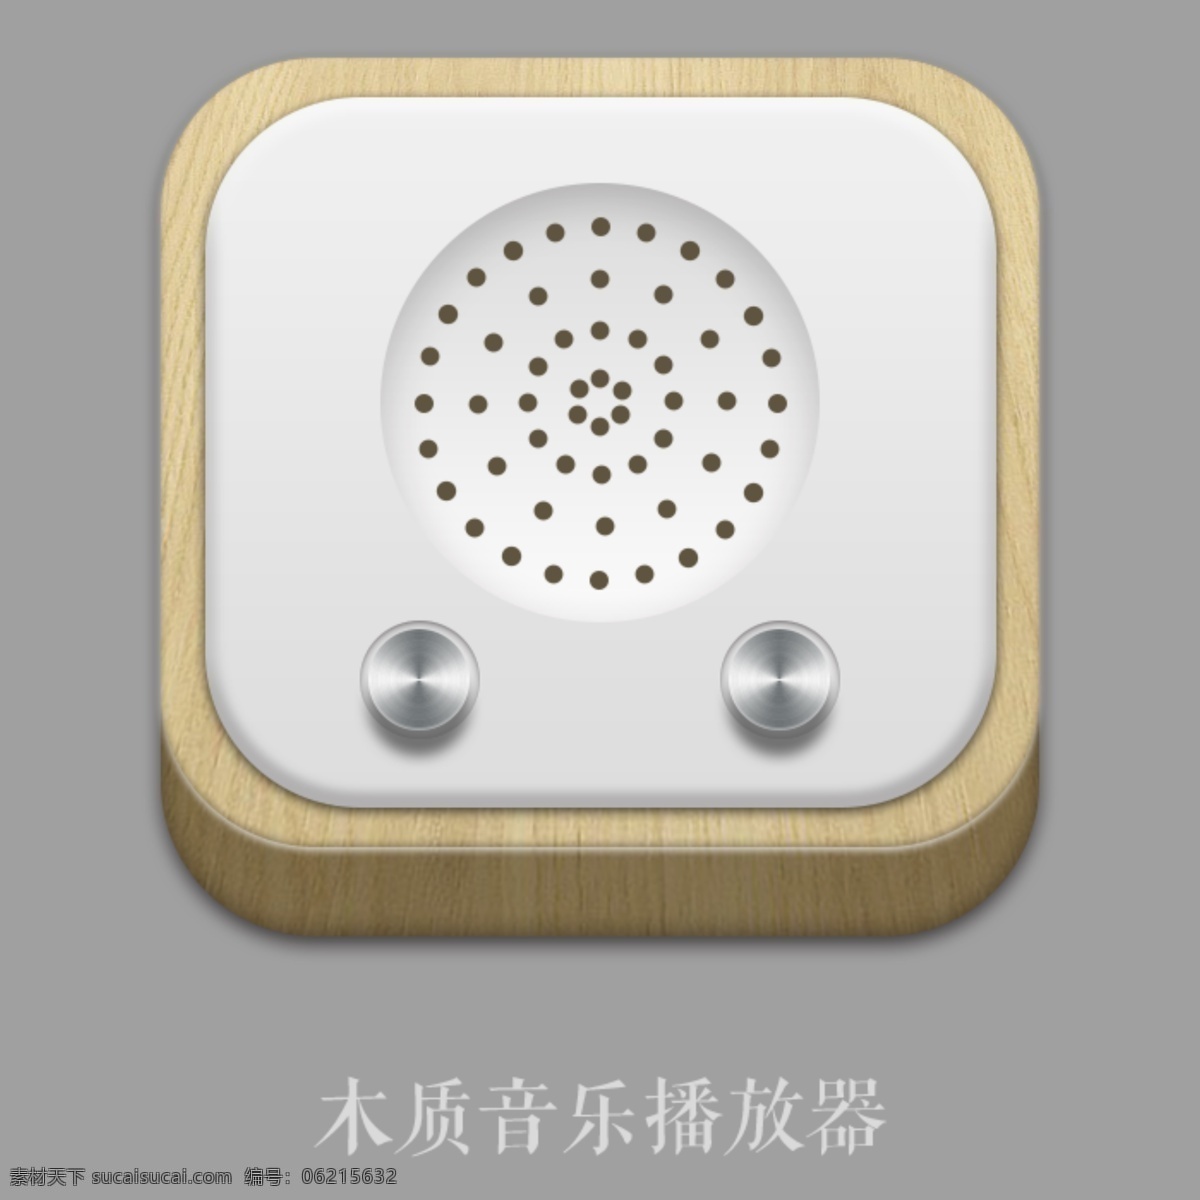 木质 音乐 播放器 icon 音乐icon 手机图标 移动界面设计 图标设计